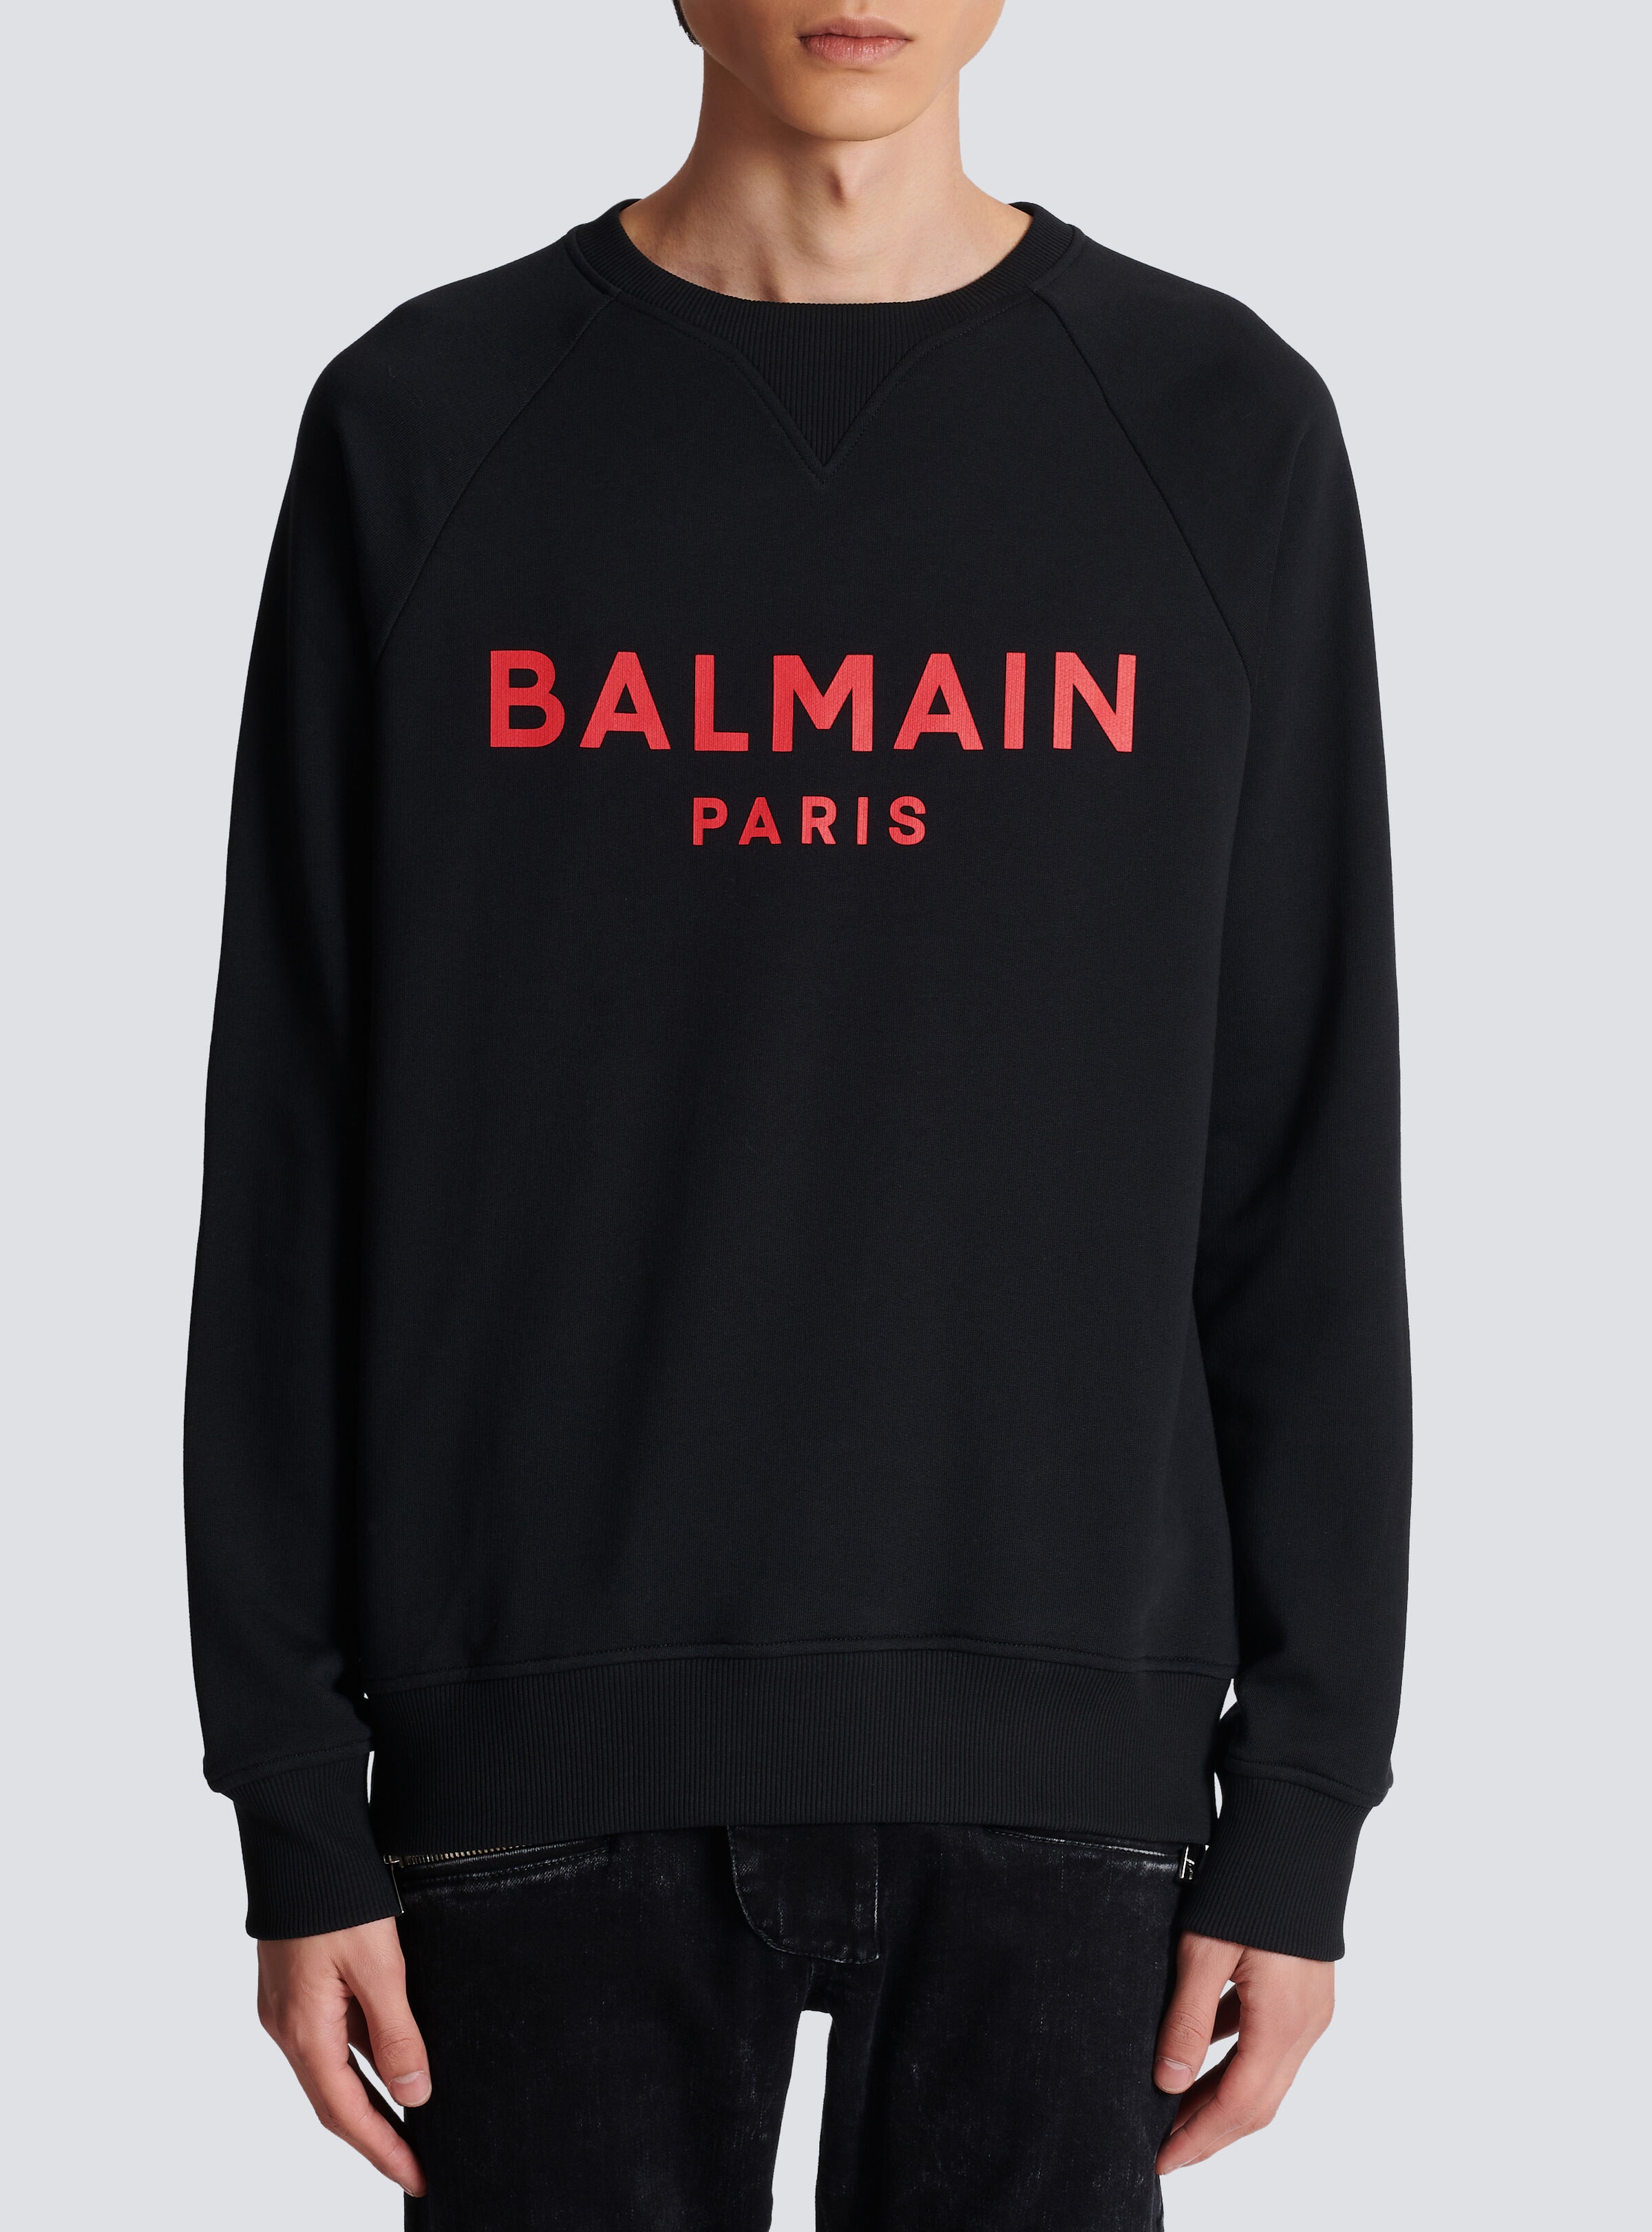 Balmain Paris printed sweatshirt - 5